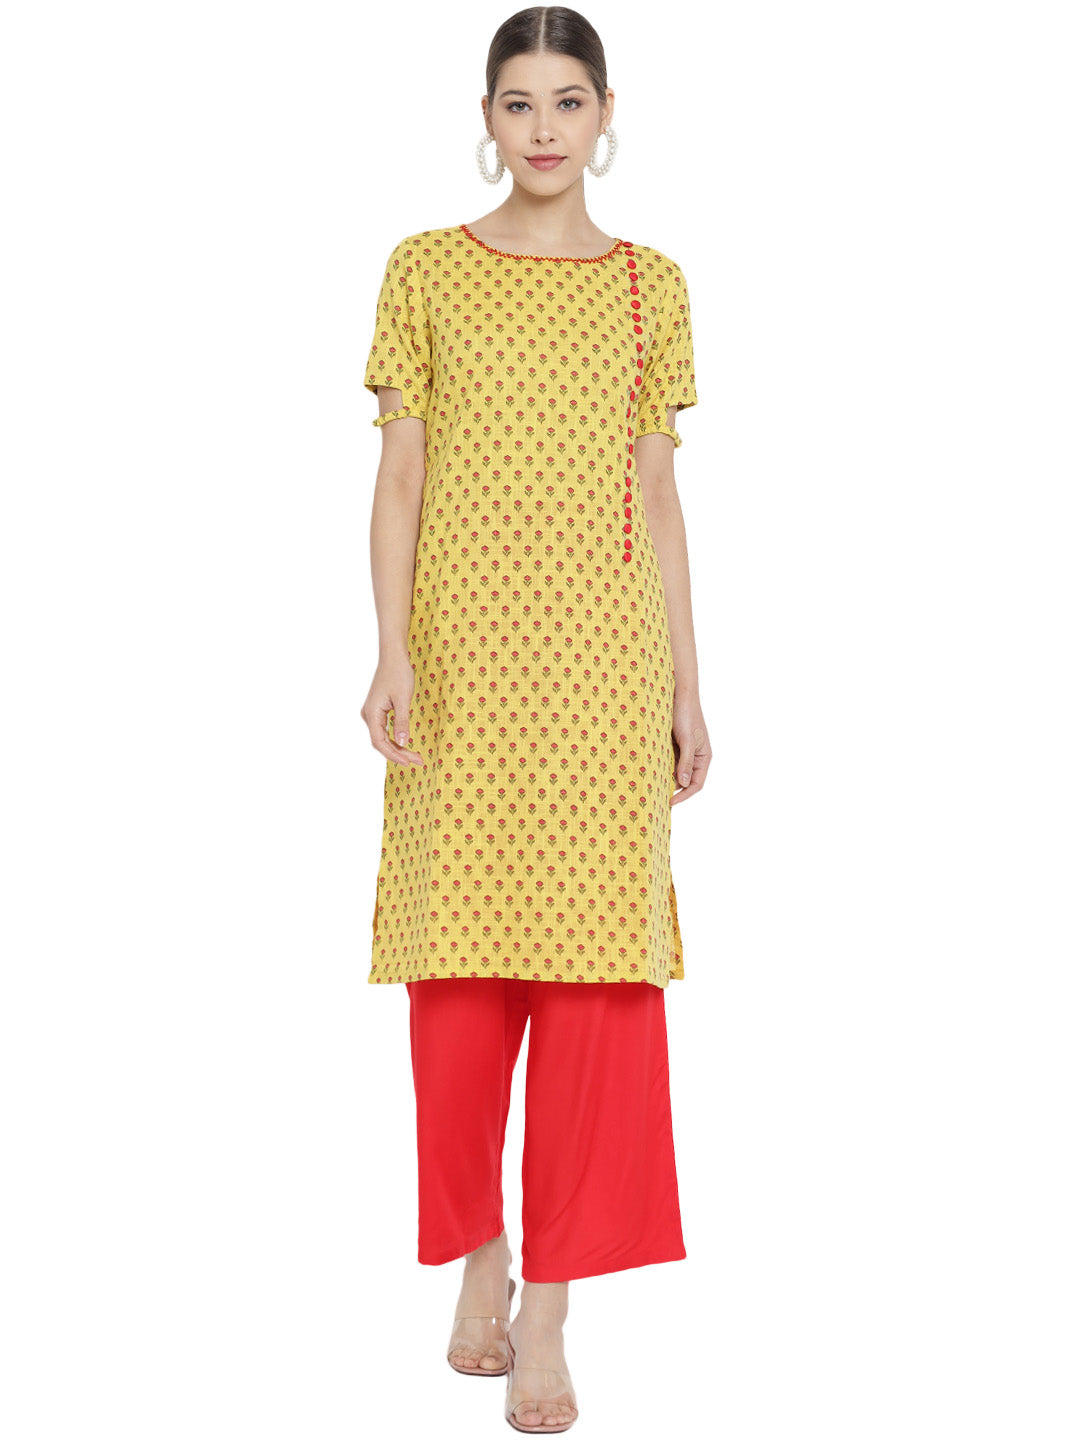 Yash Gallery Women's Cotton & Rayon Floral Print Straight Kurta Palazzo Set (Yellow & Red)